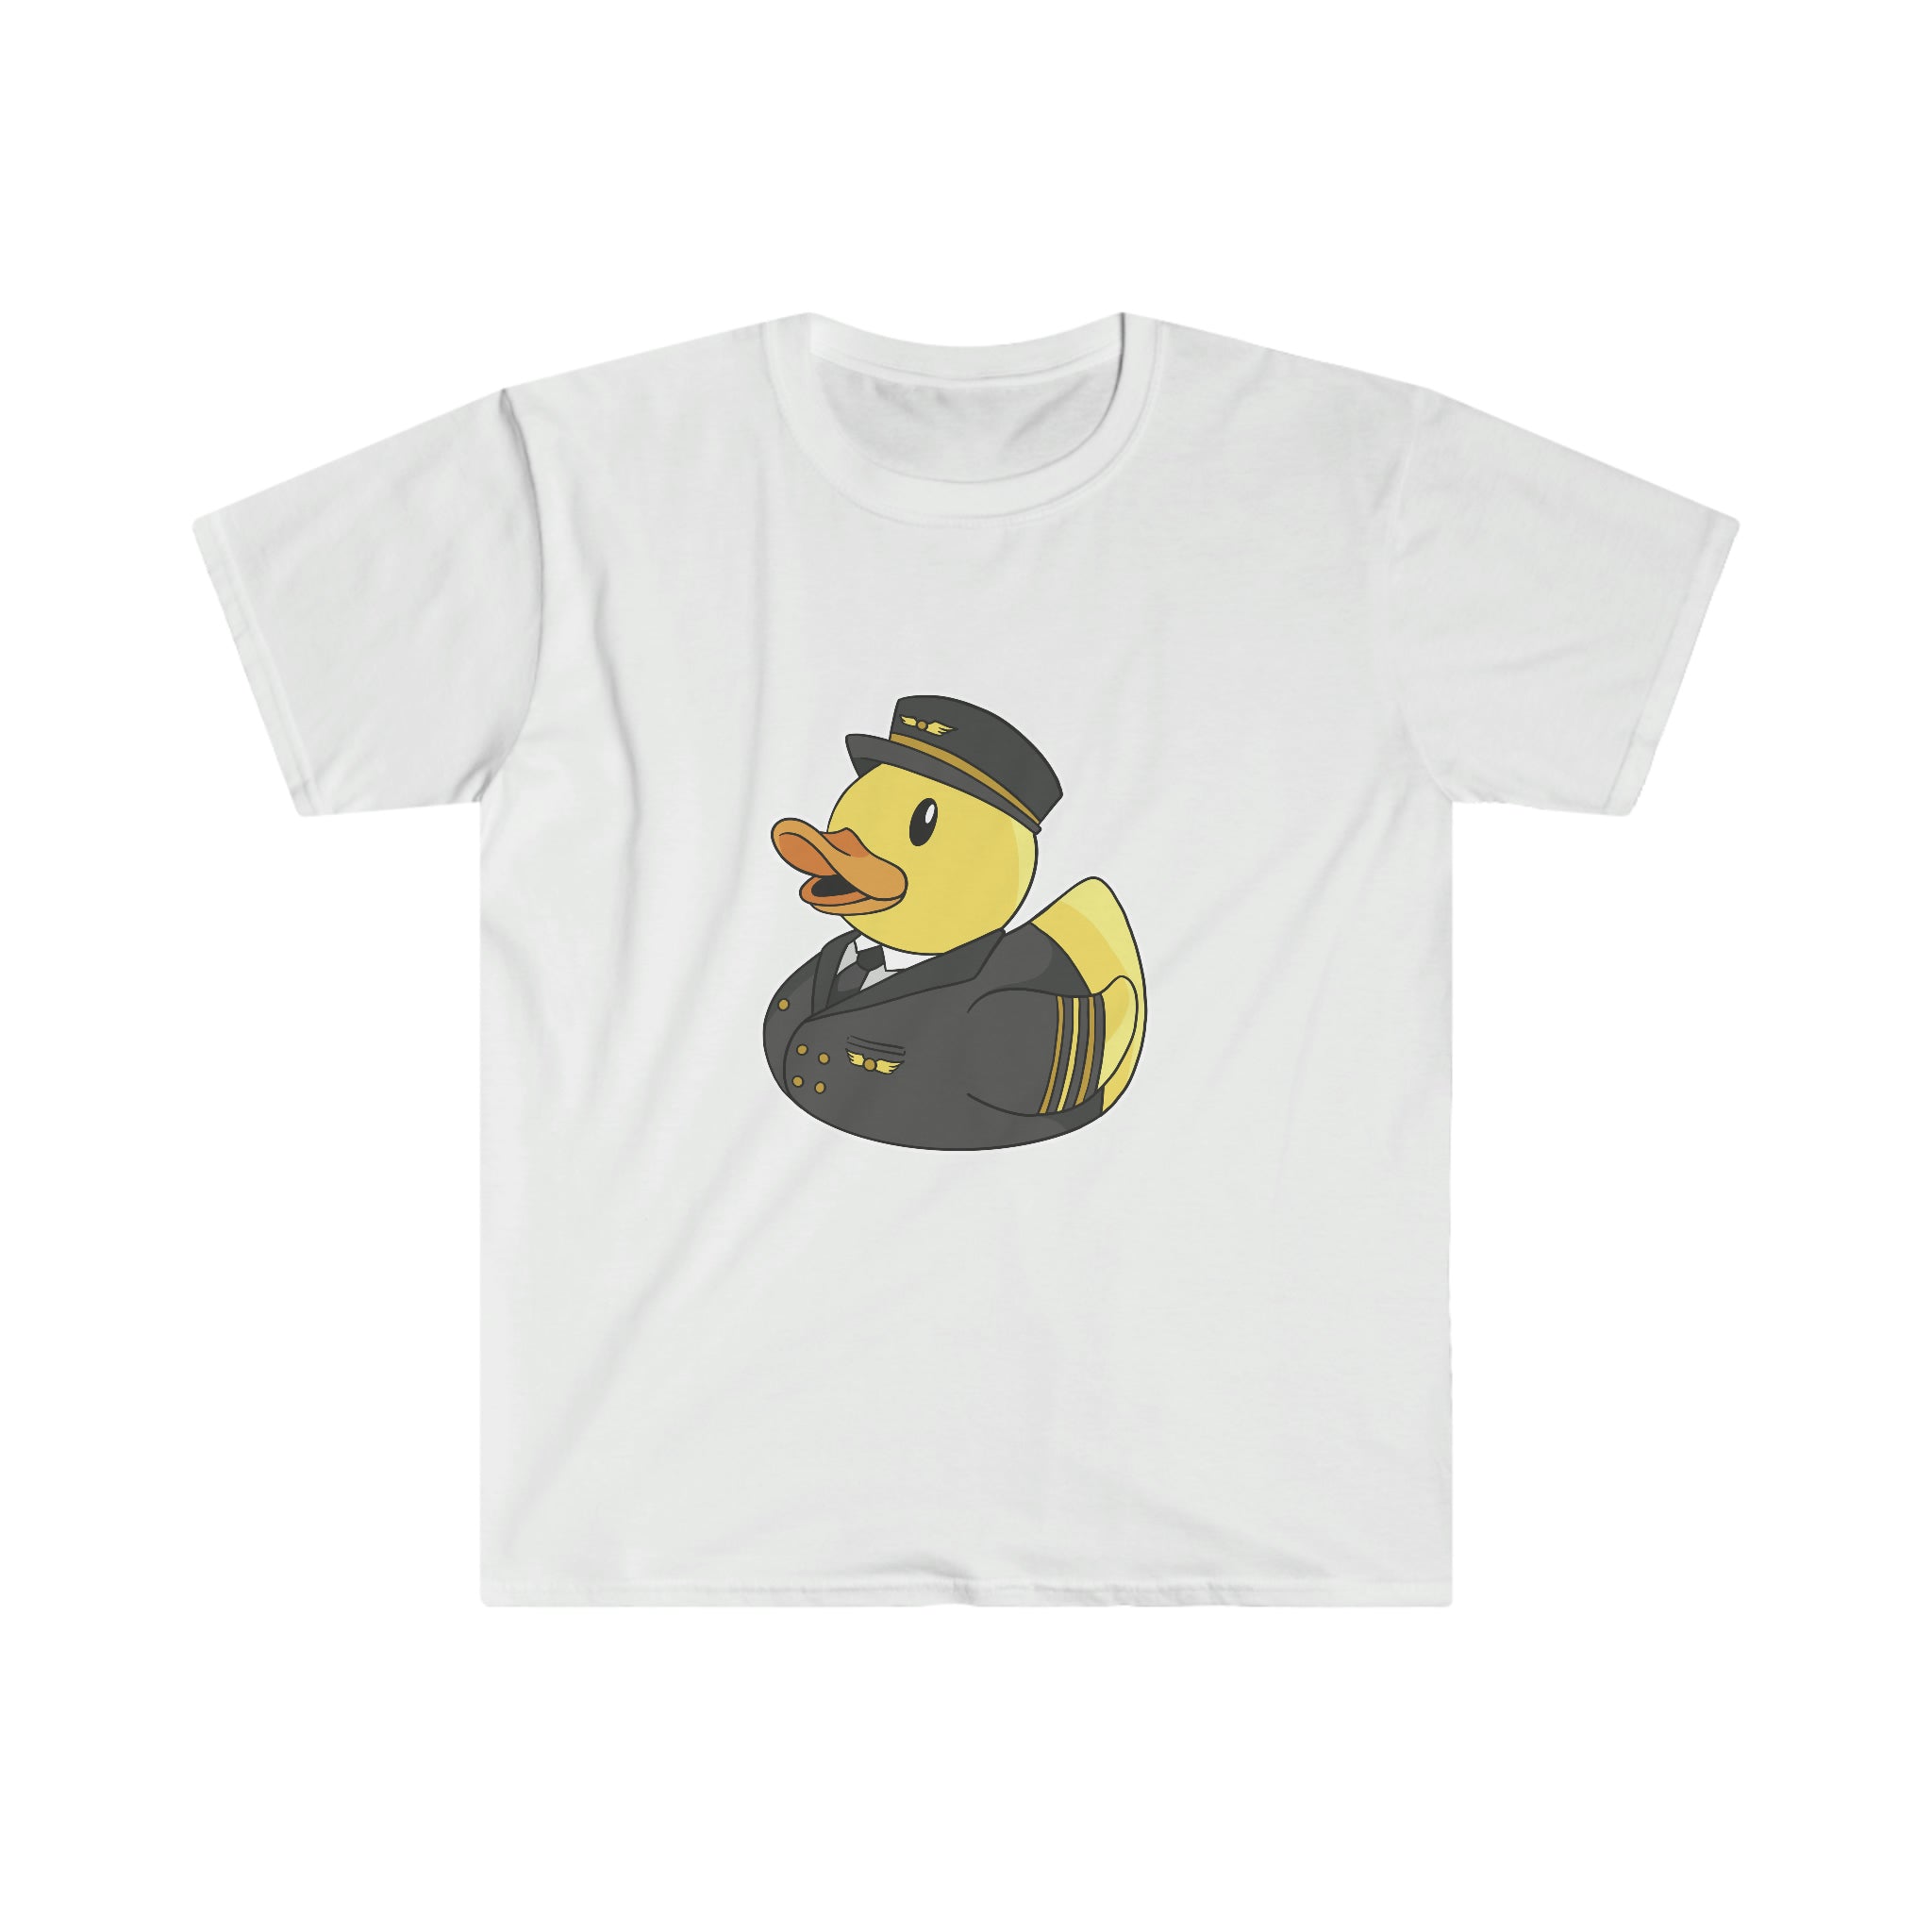 A luxurious Pilot Duck T-Shirt featuring a Pilot Duck image.